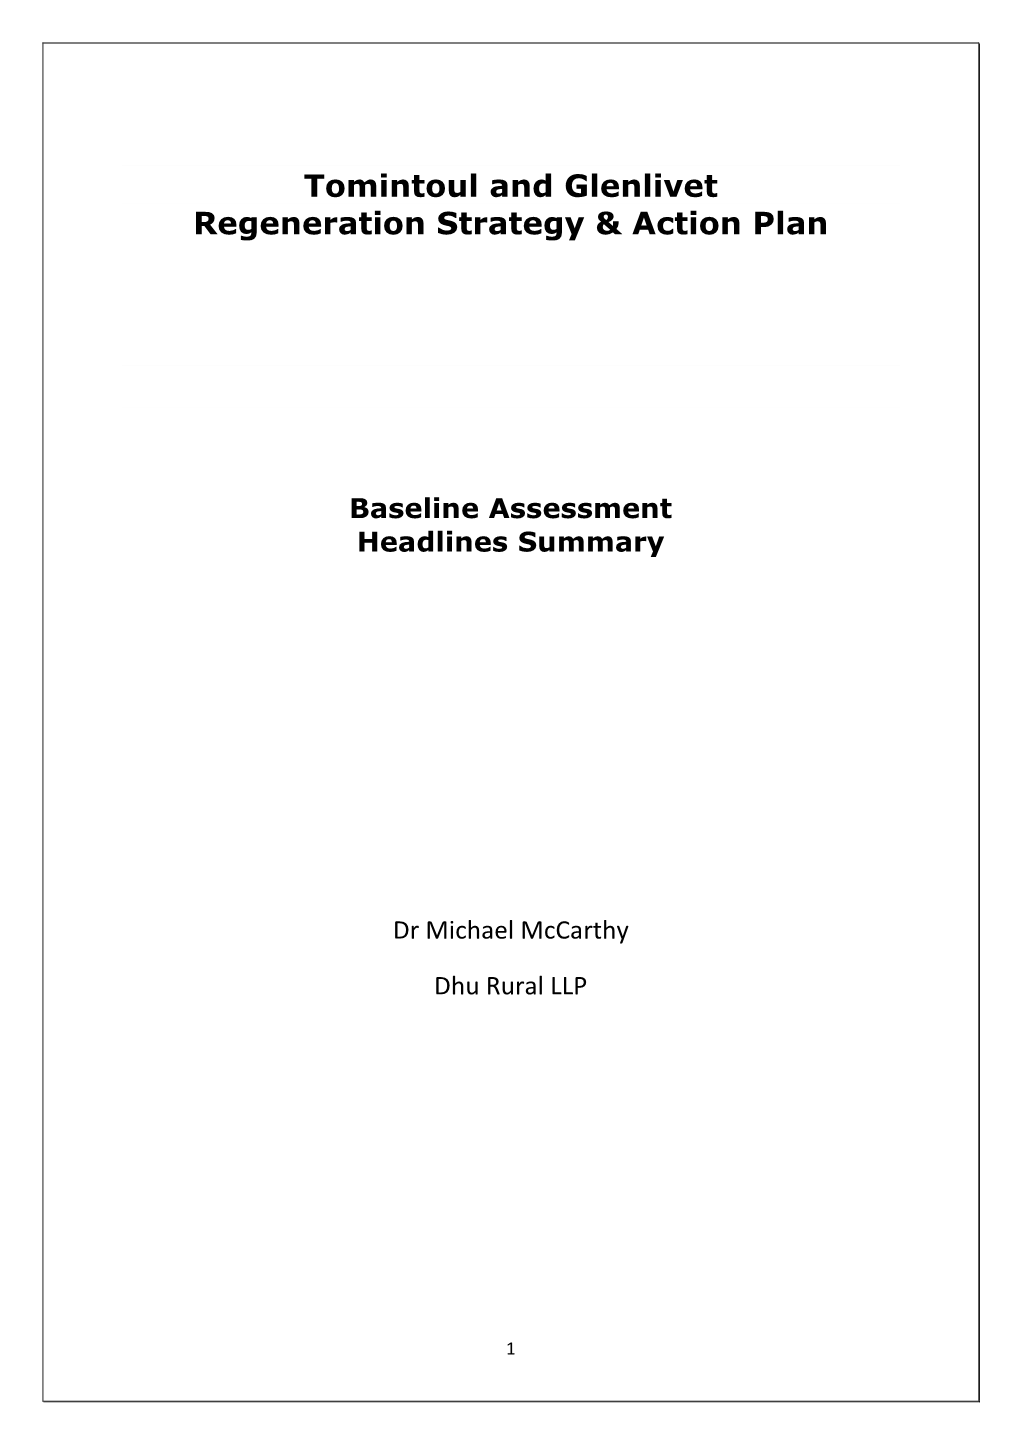 Tomintoul and Glenlivet Regeneration Strategy & Action Plan